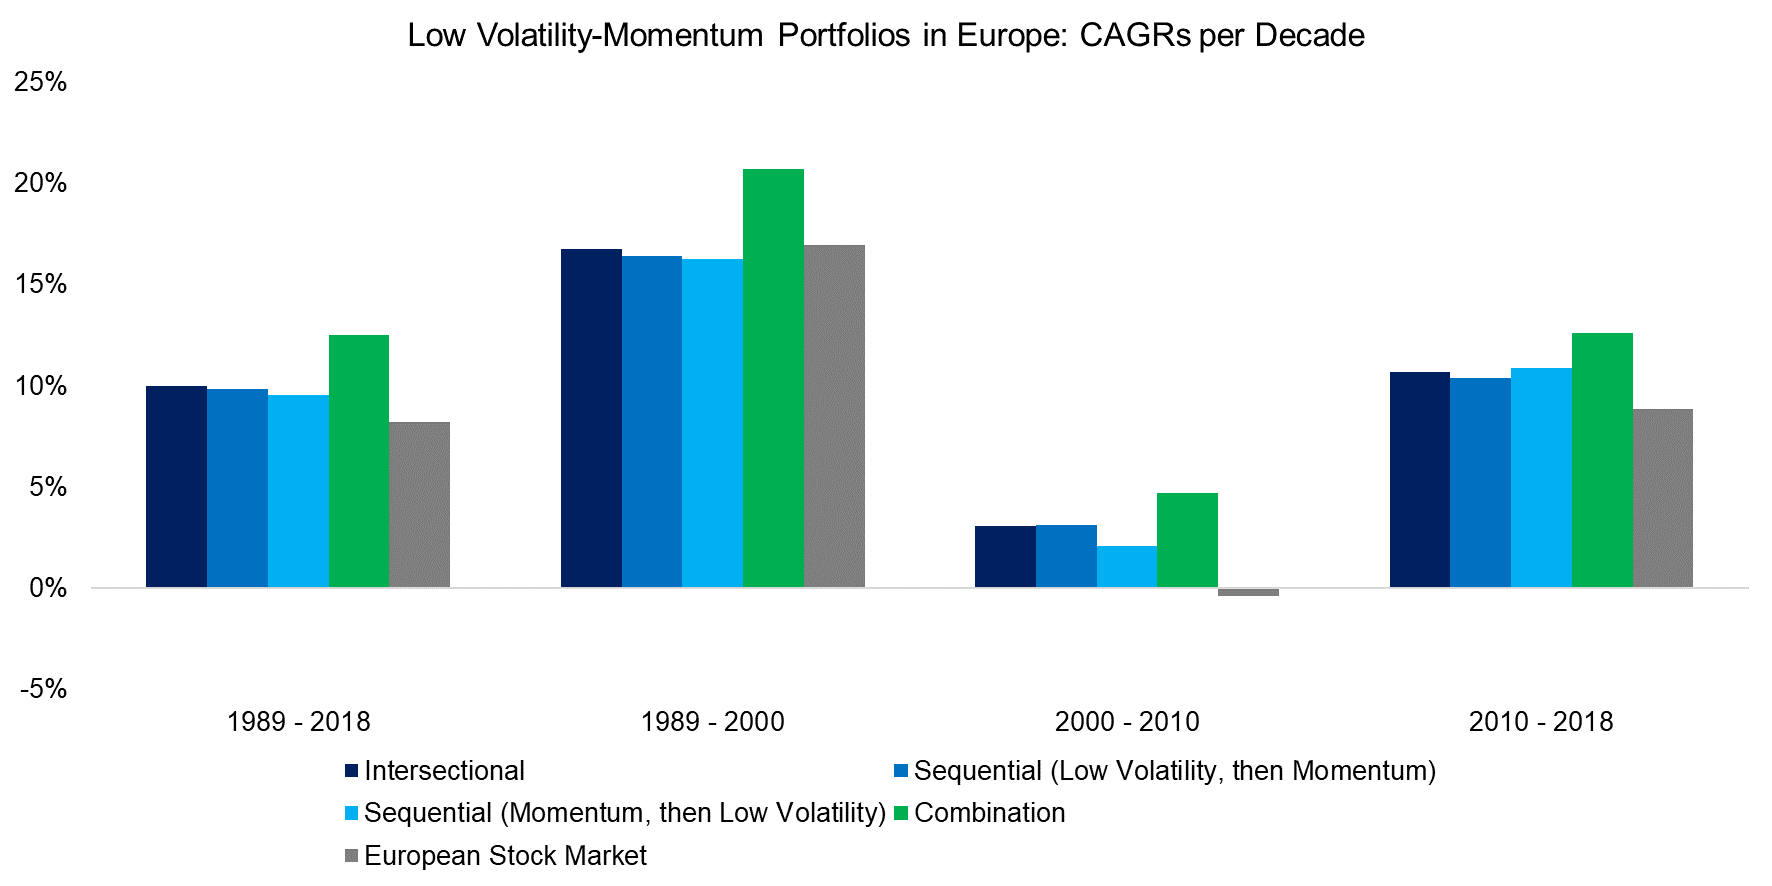 Low Volatility-Momentum Portfolios in Europe CAGRs per Decade